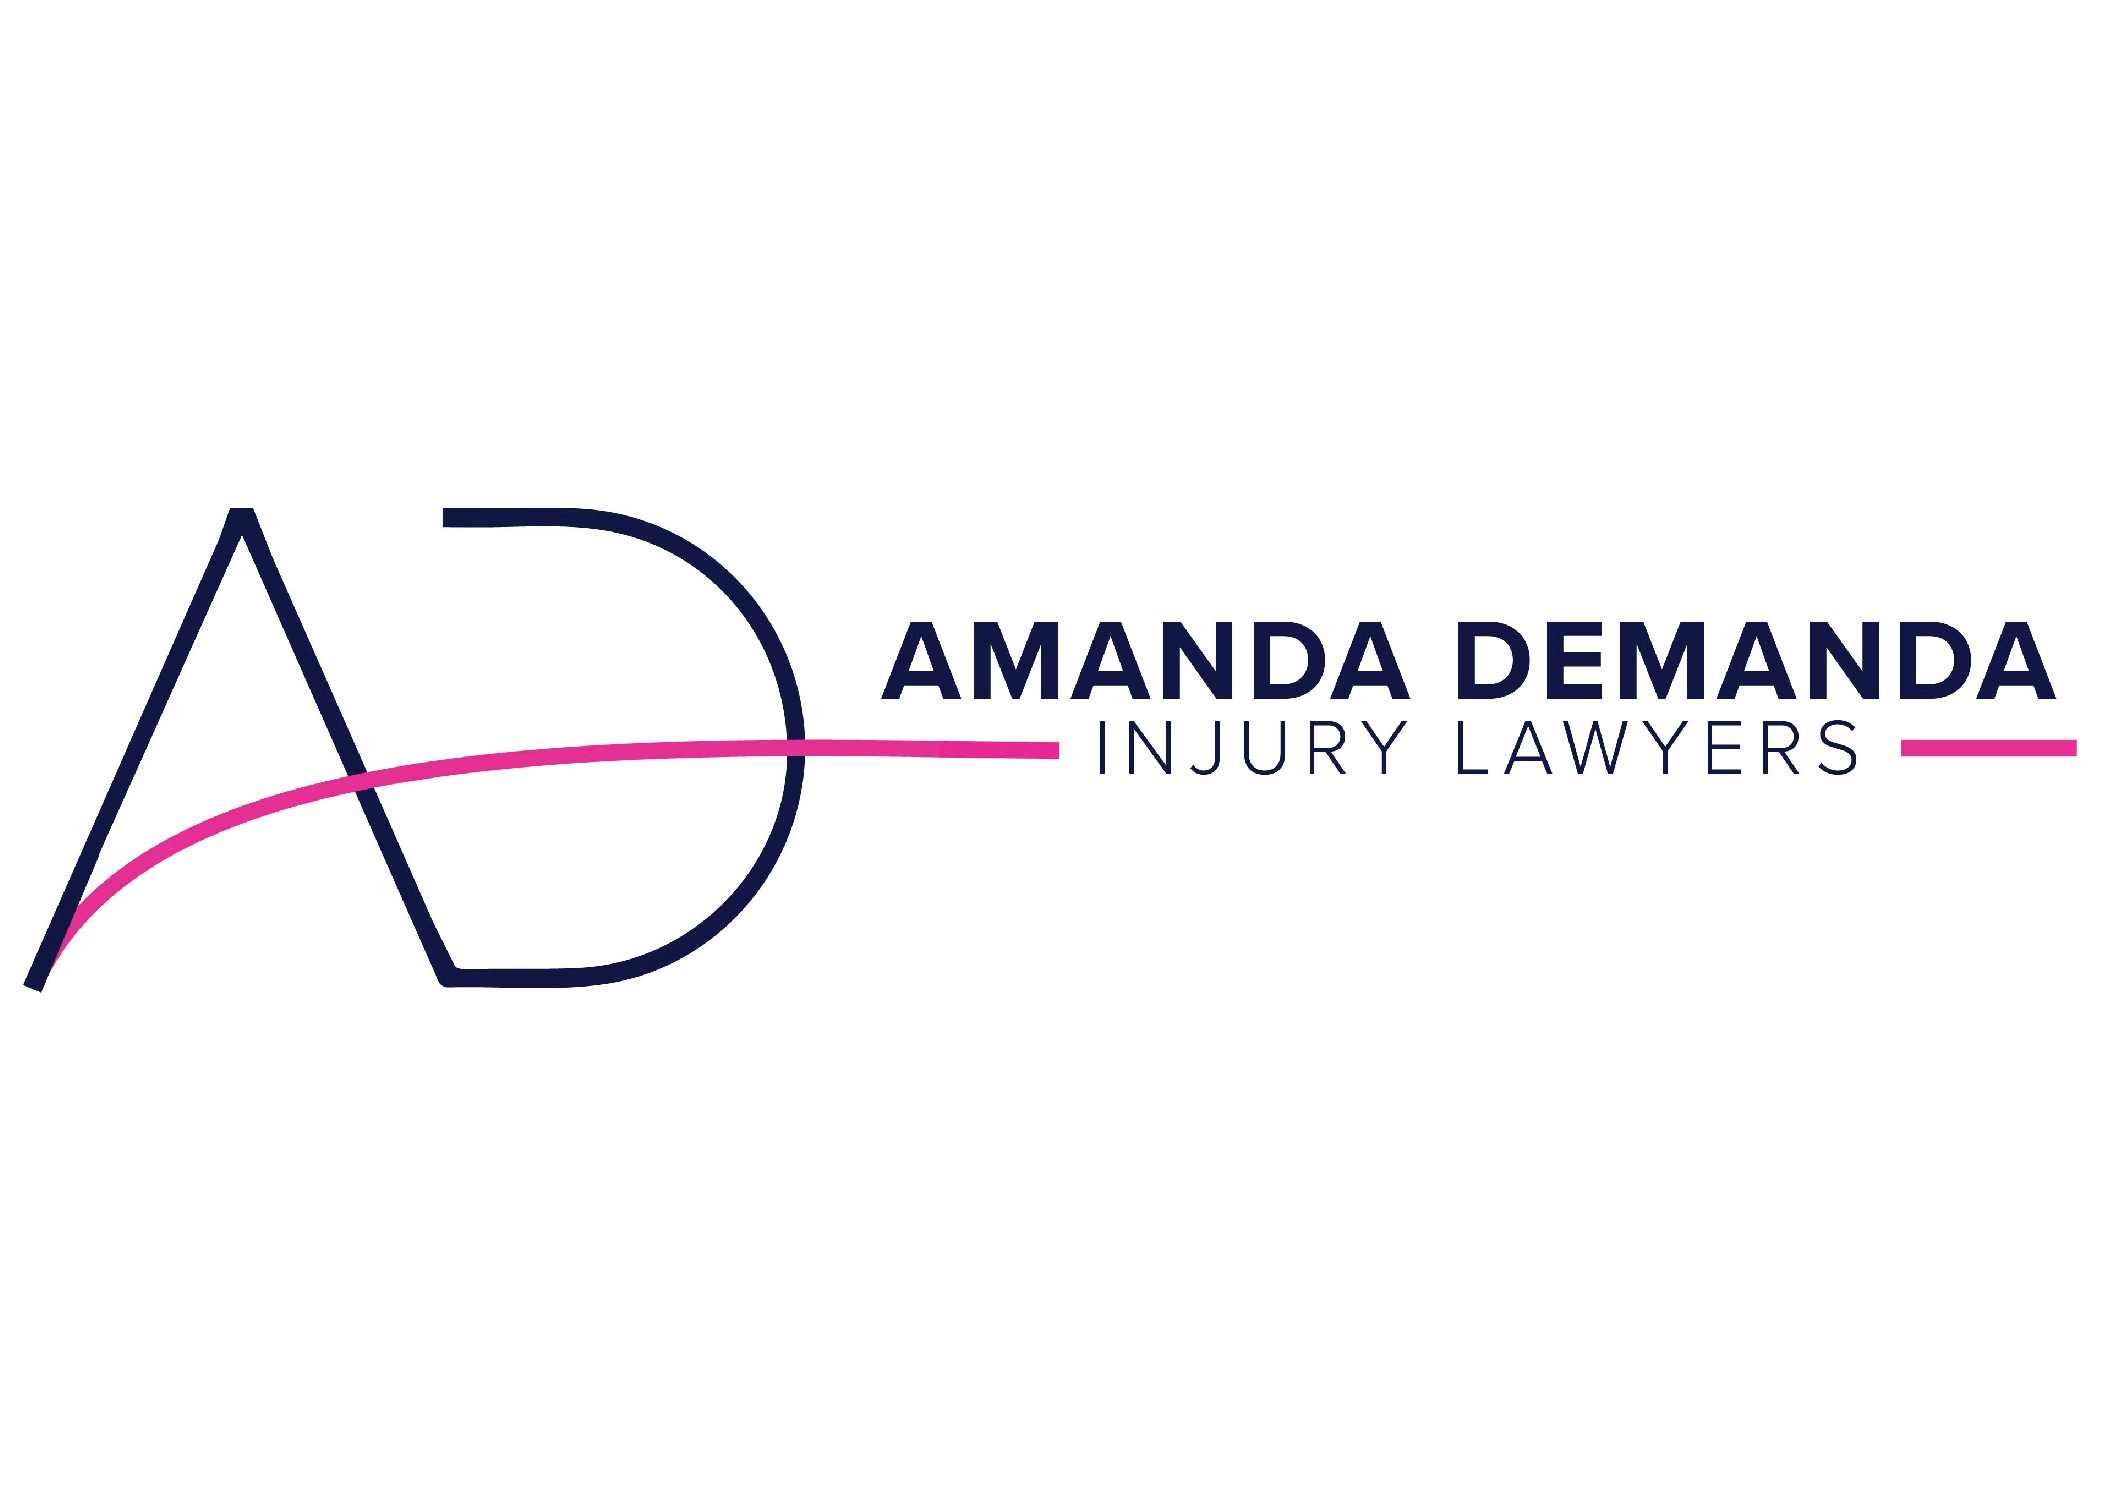 Amanda Demanda Law Group